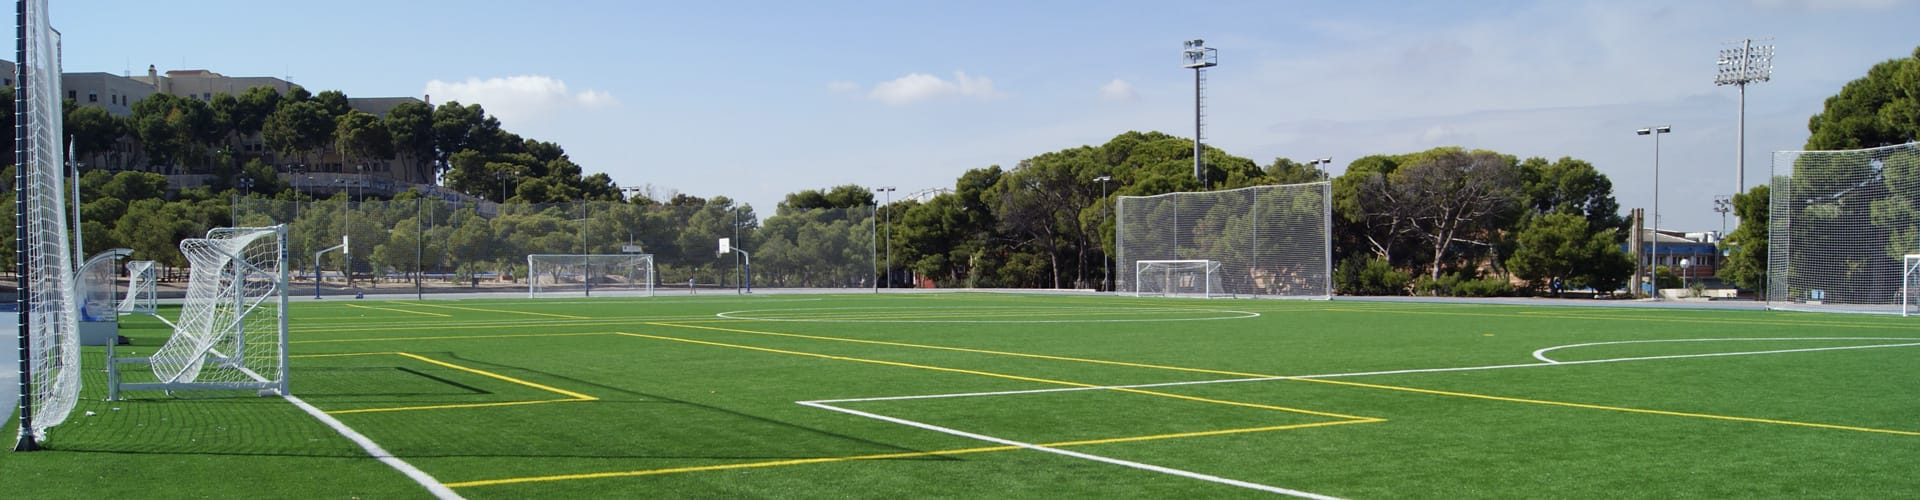 Césped artificial fútbol hipódromo Alicante